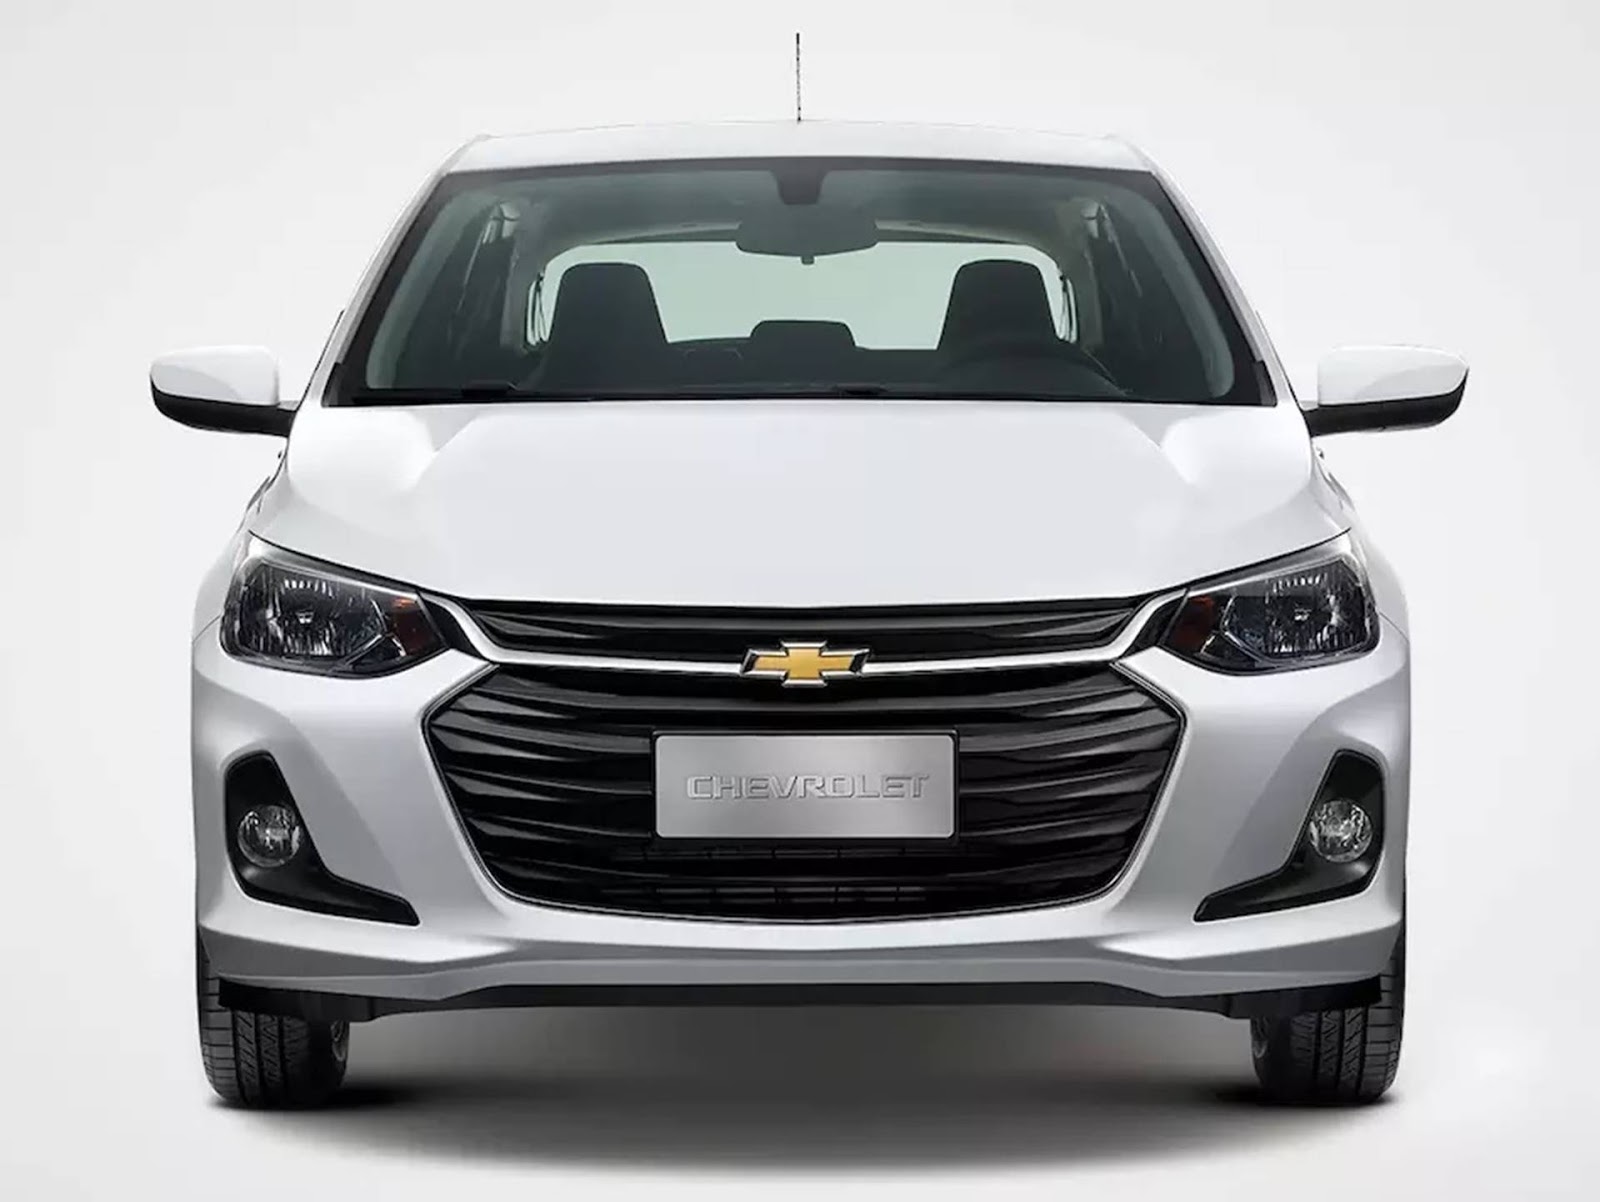 Chevrolet revela dimensões do novo Onix hatch e dados do motor 1.0 sem turbo